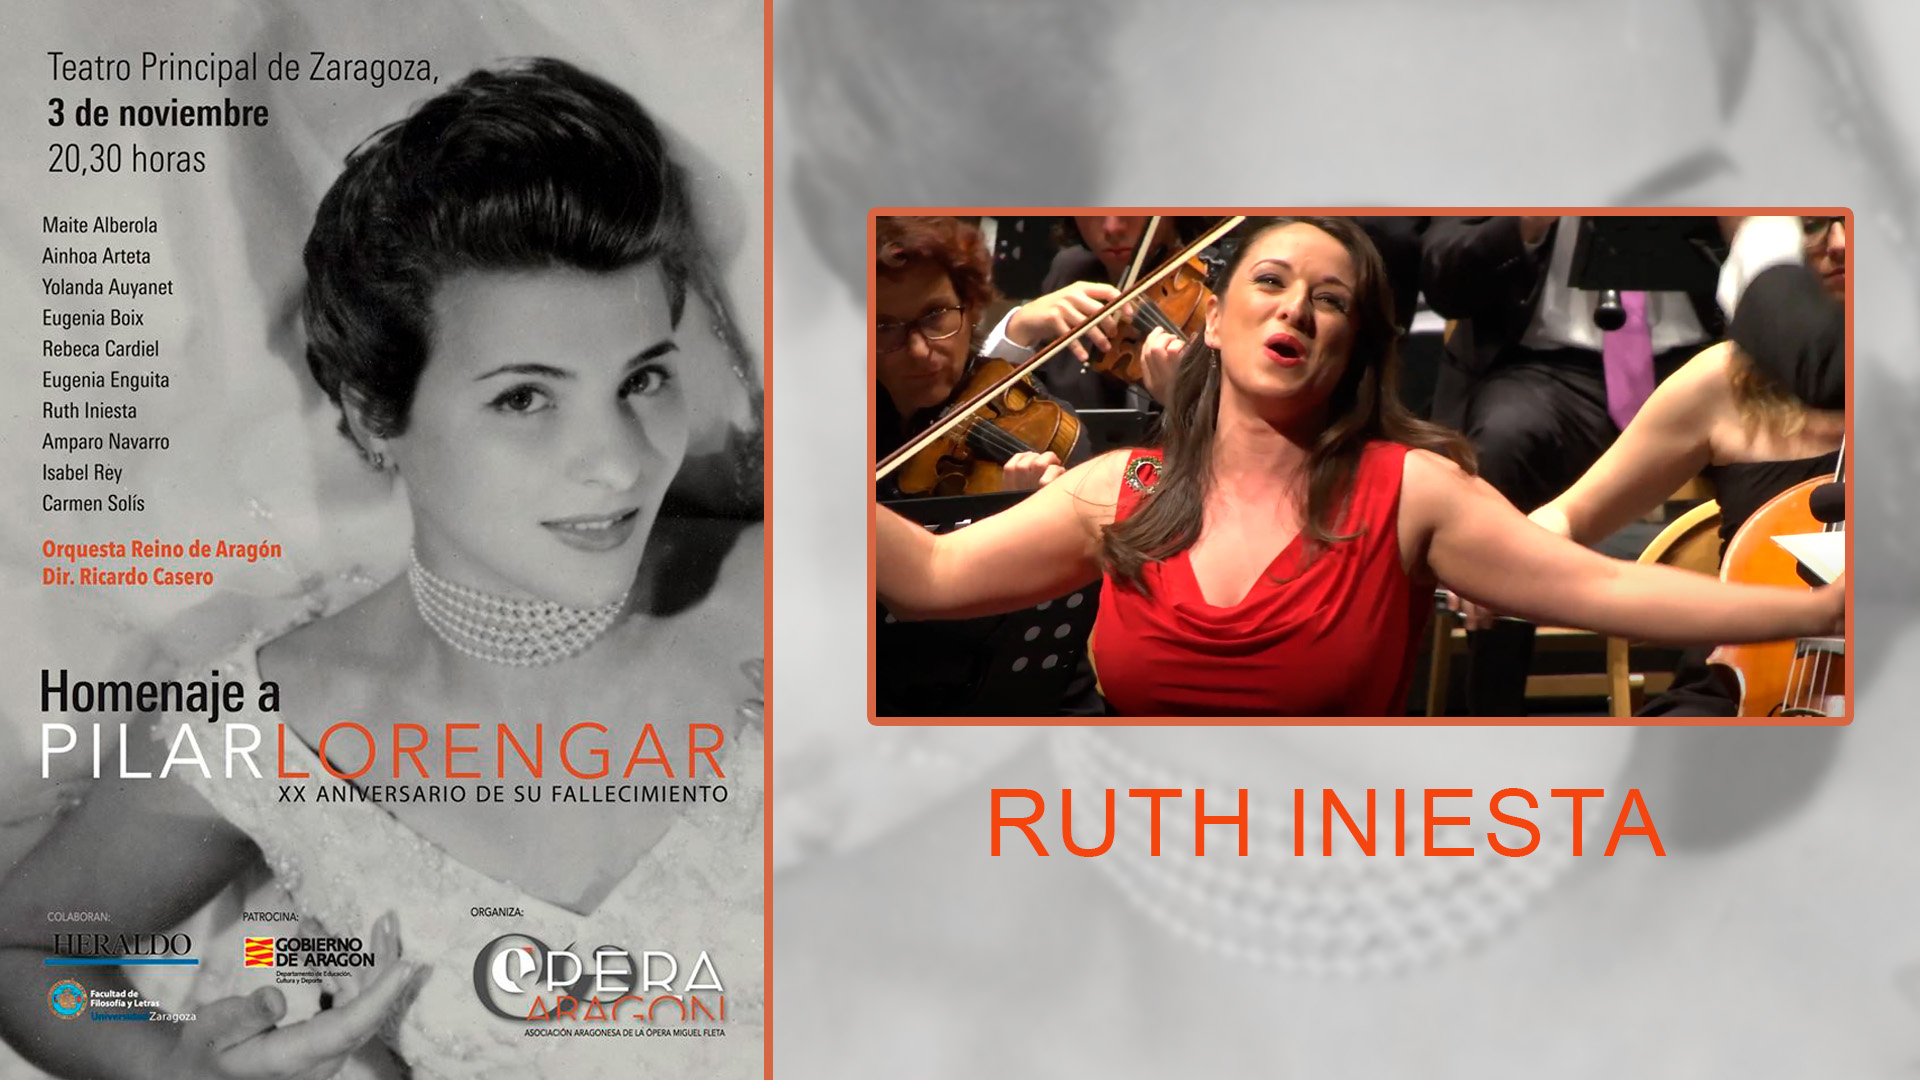 Ruth Iniesta . Homenaje a Pilar Lorengar en el Teatro Principal de Zaragoza.